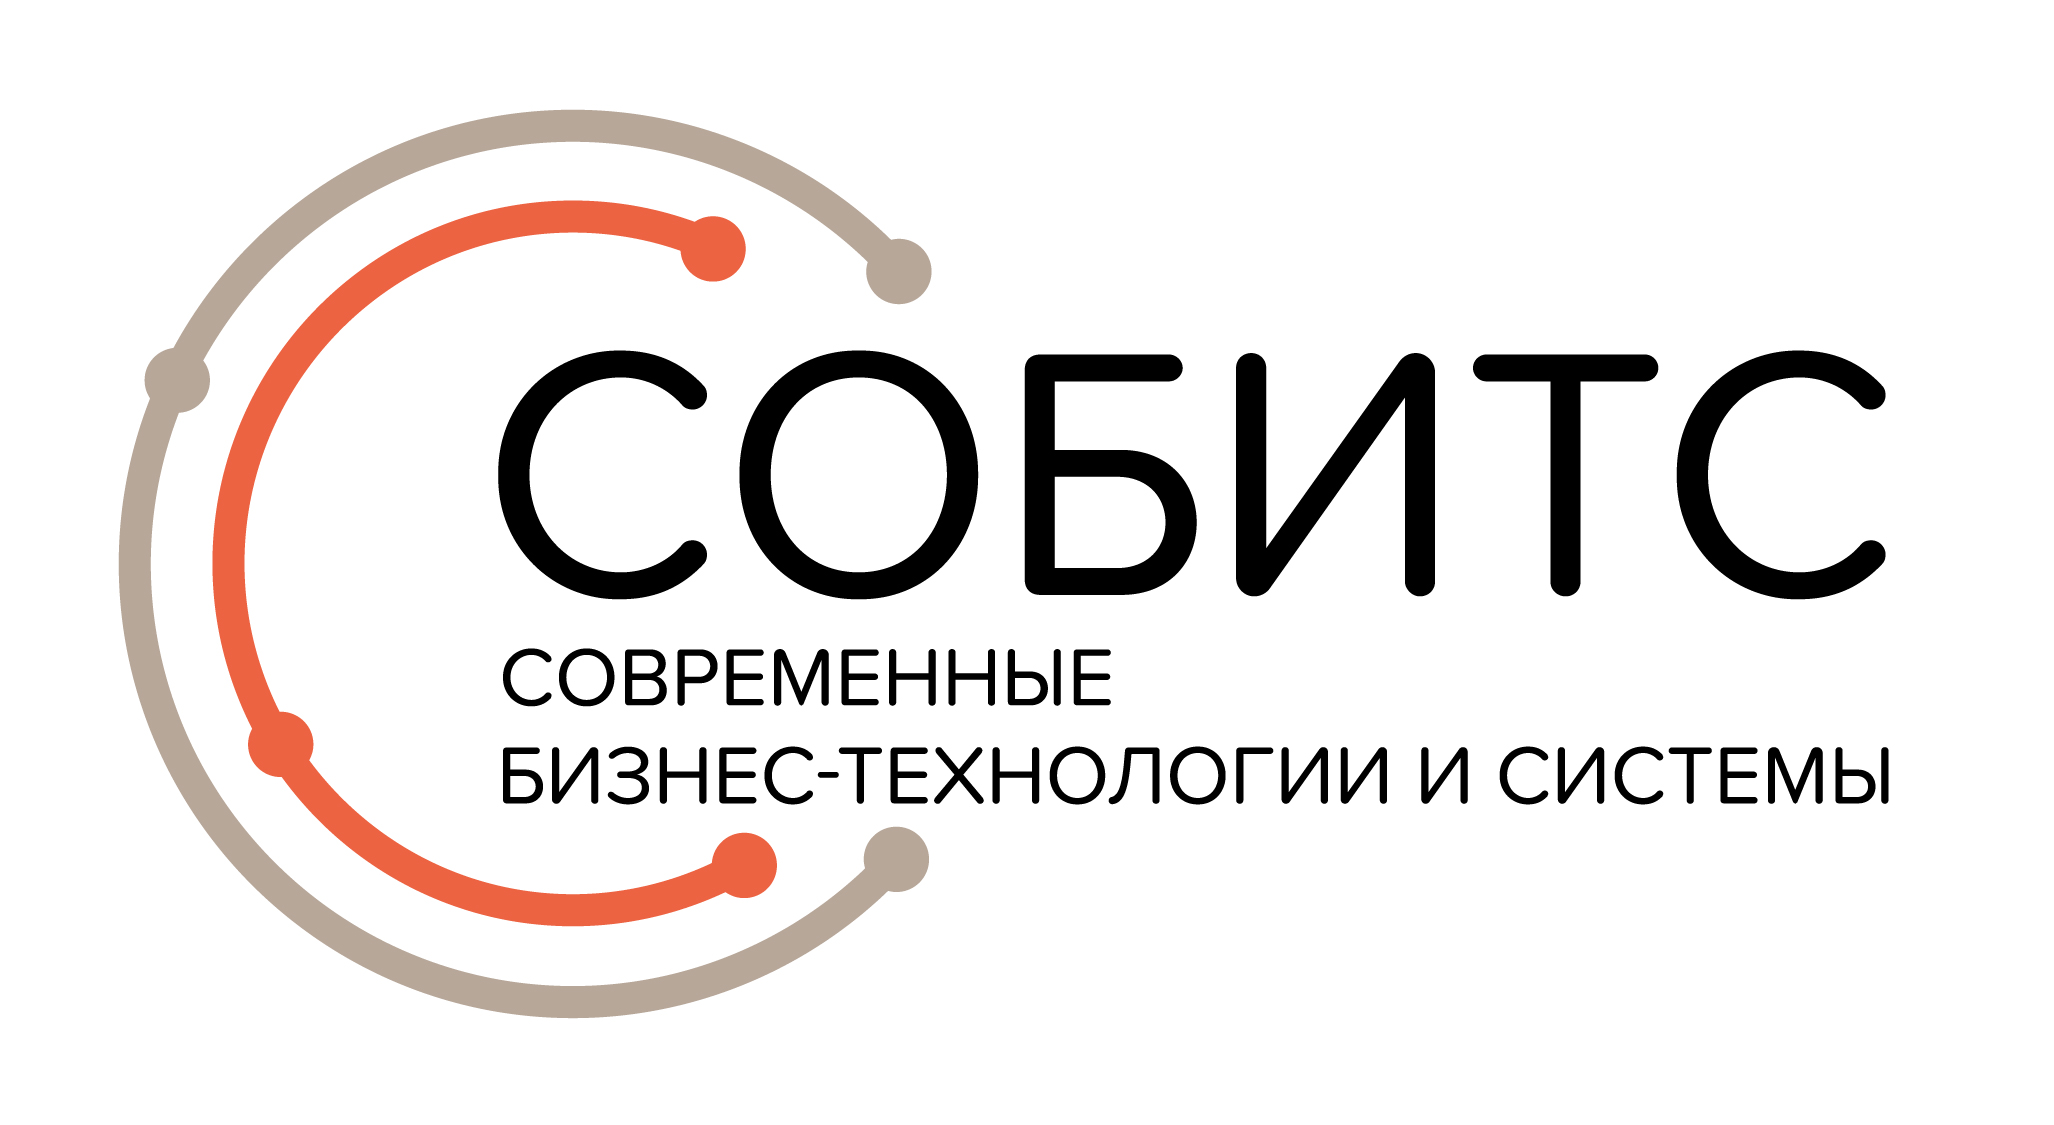 Логотип компании «СОБИТС»